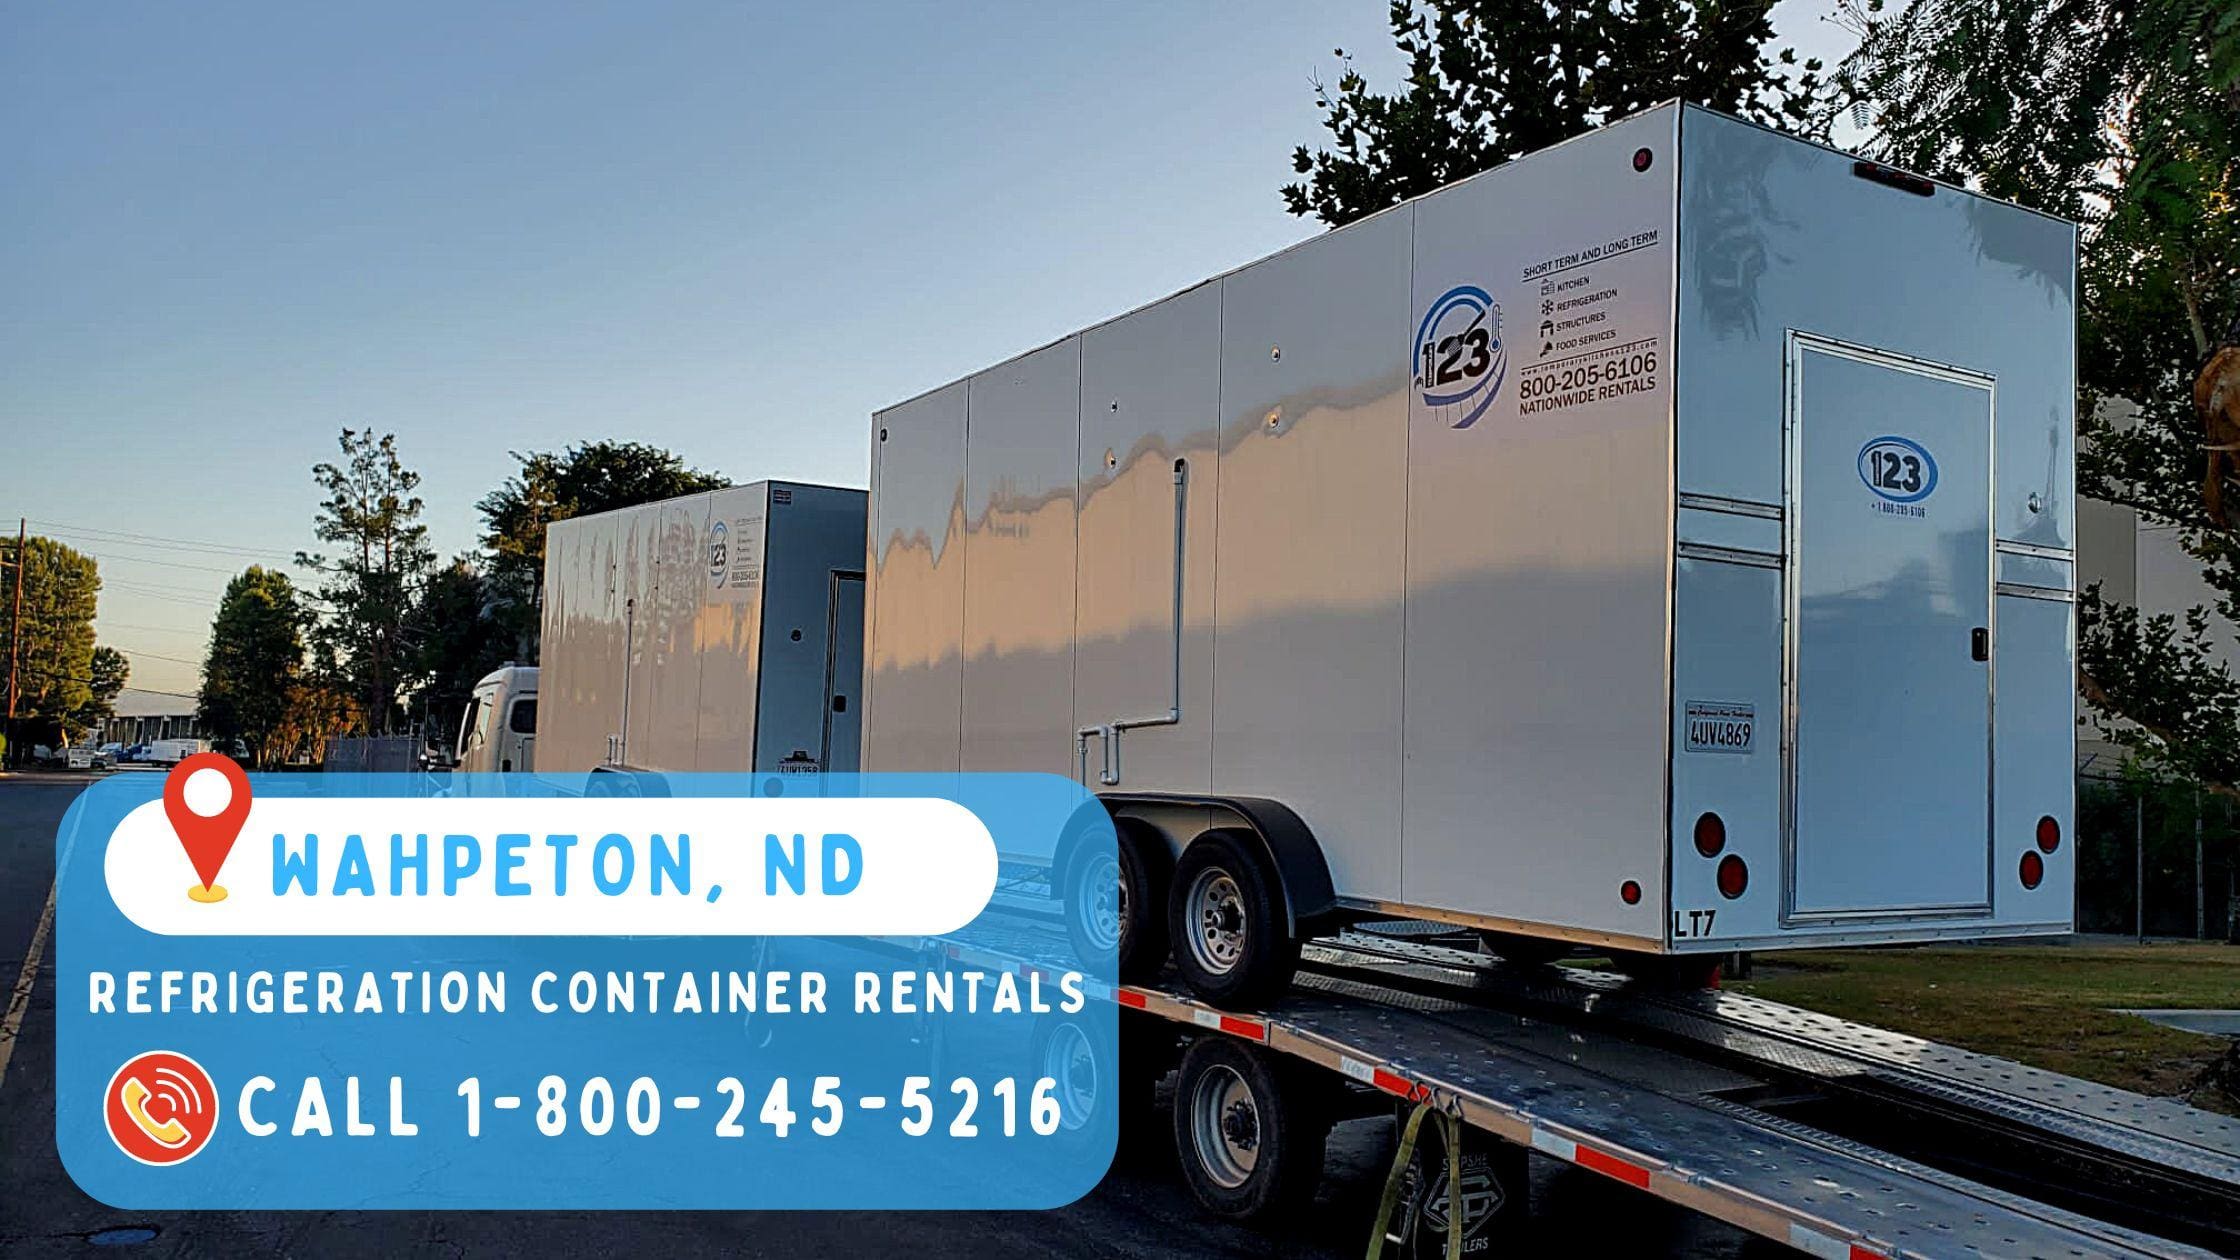 Refrigeration Container Rentals in Wahpeton